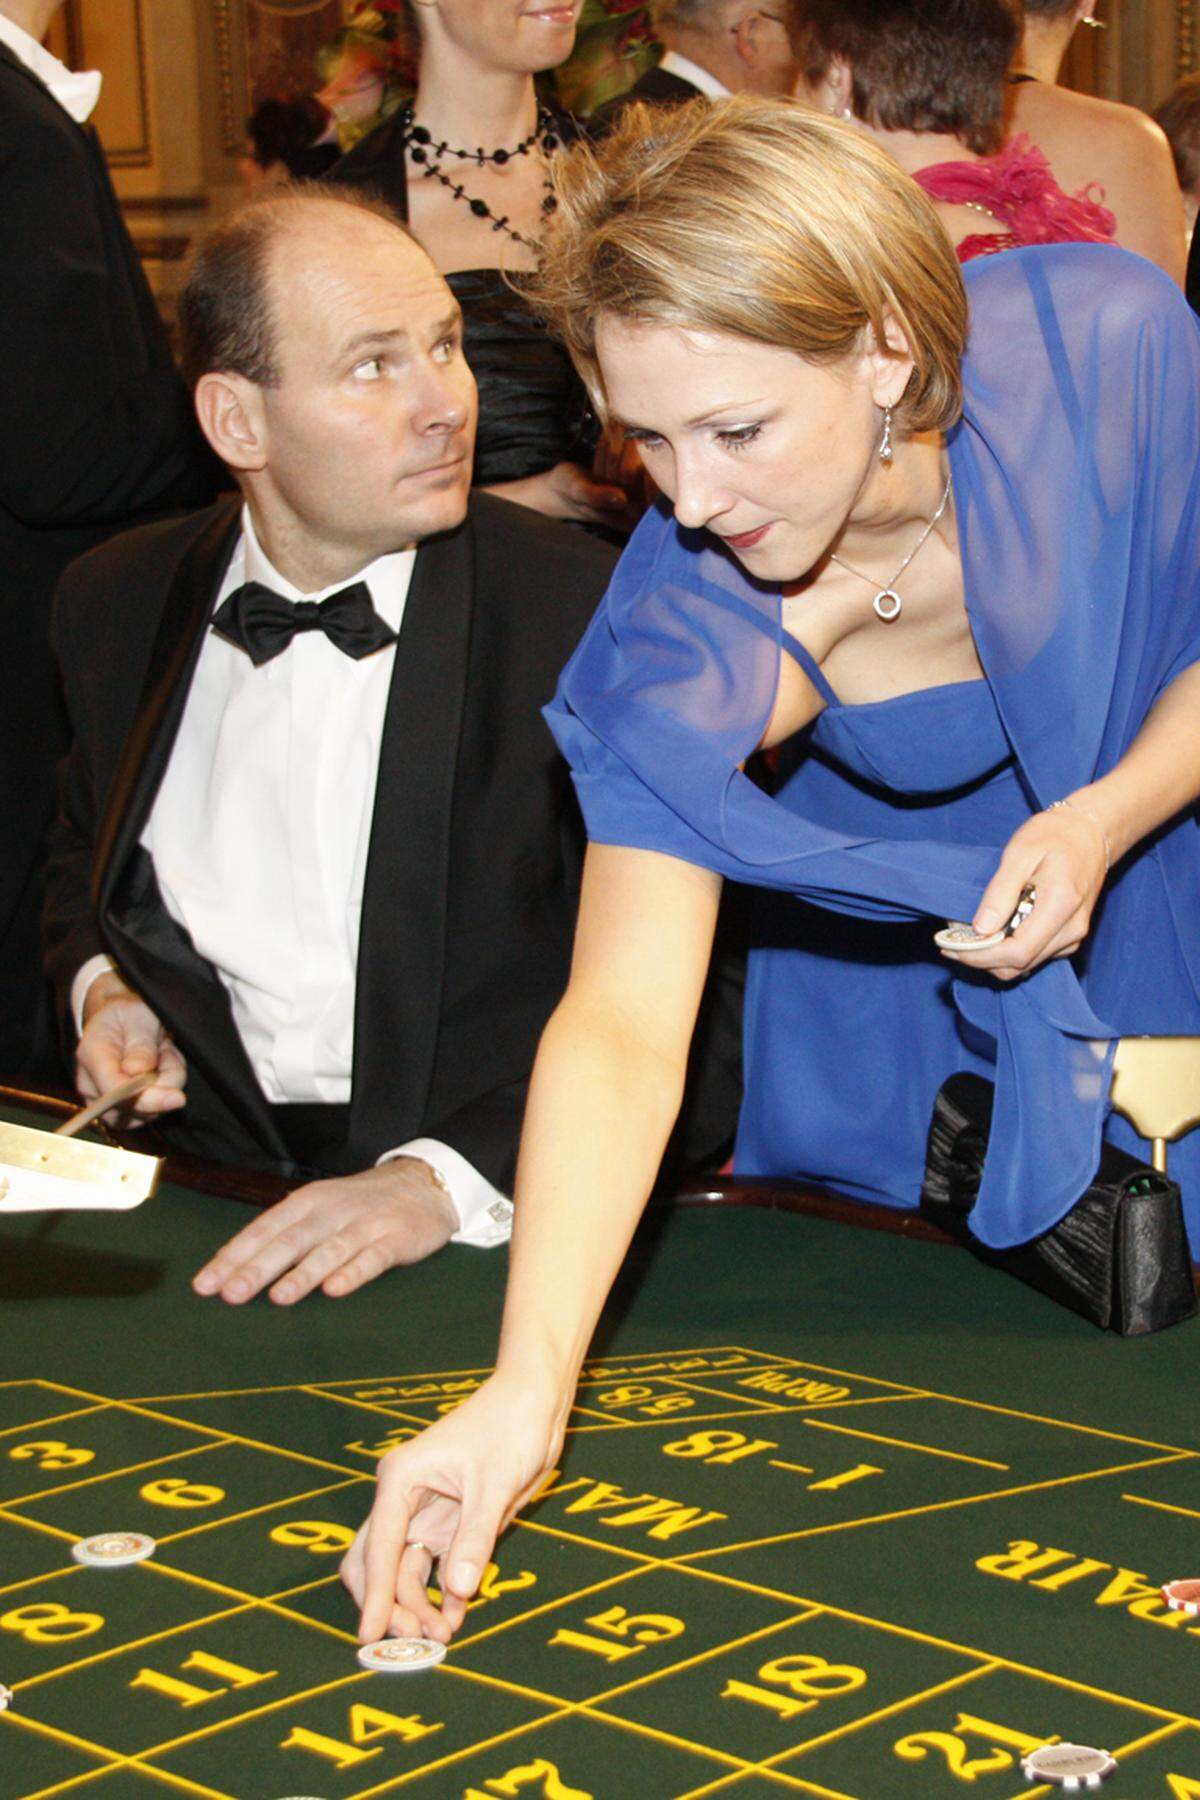 Was die einen dank Gerstners Luxus-Catering verdauen, verspielen die anderen im Casino. Geld spielt in einer Opernballnacht wahrscheinlich ohnehin keine tragende Rolle.